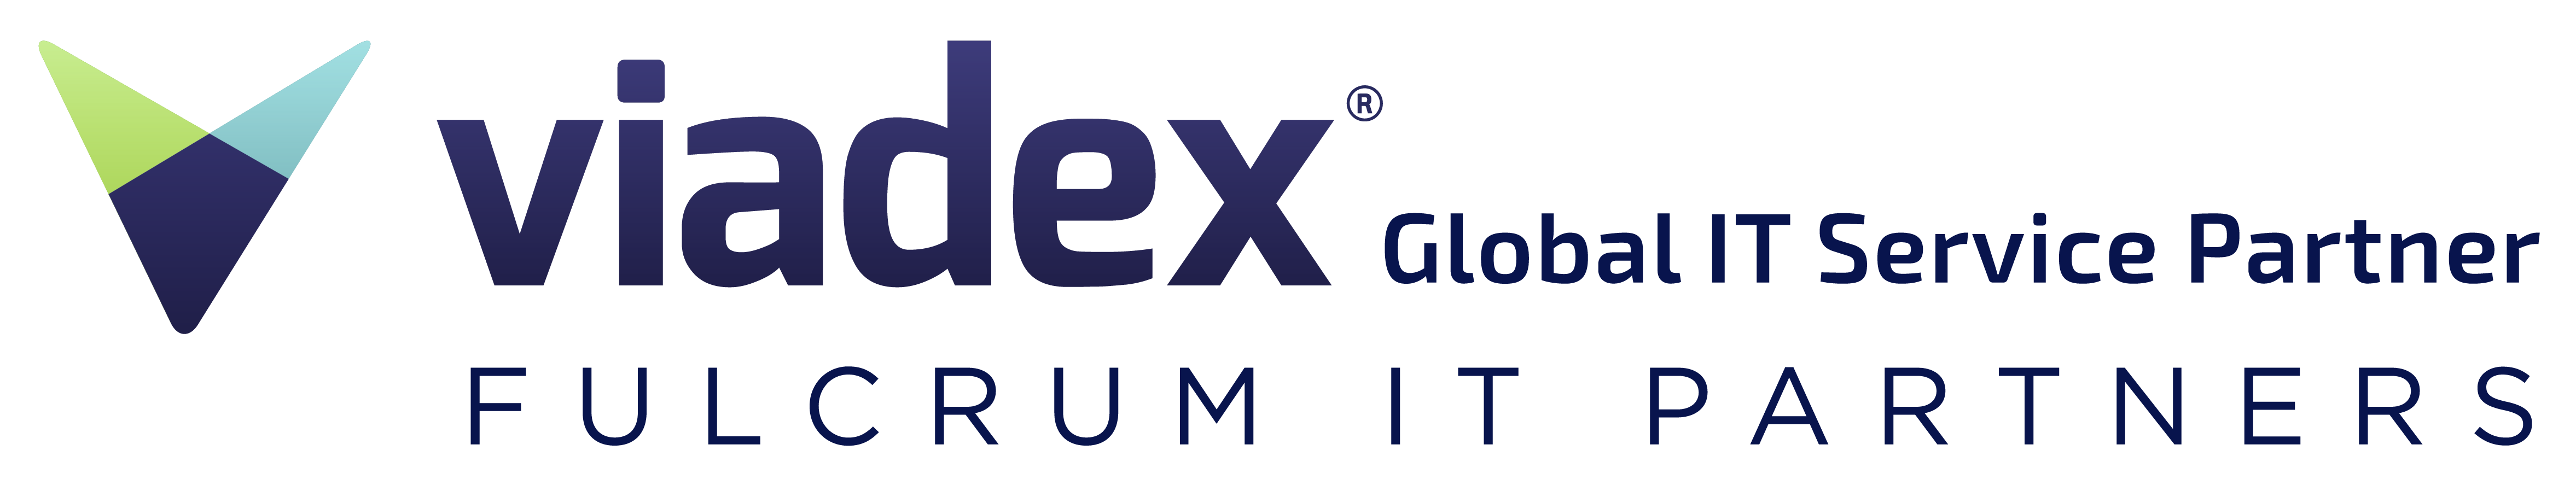 Viadex-Logo-RGB-REGISTERED-web